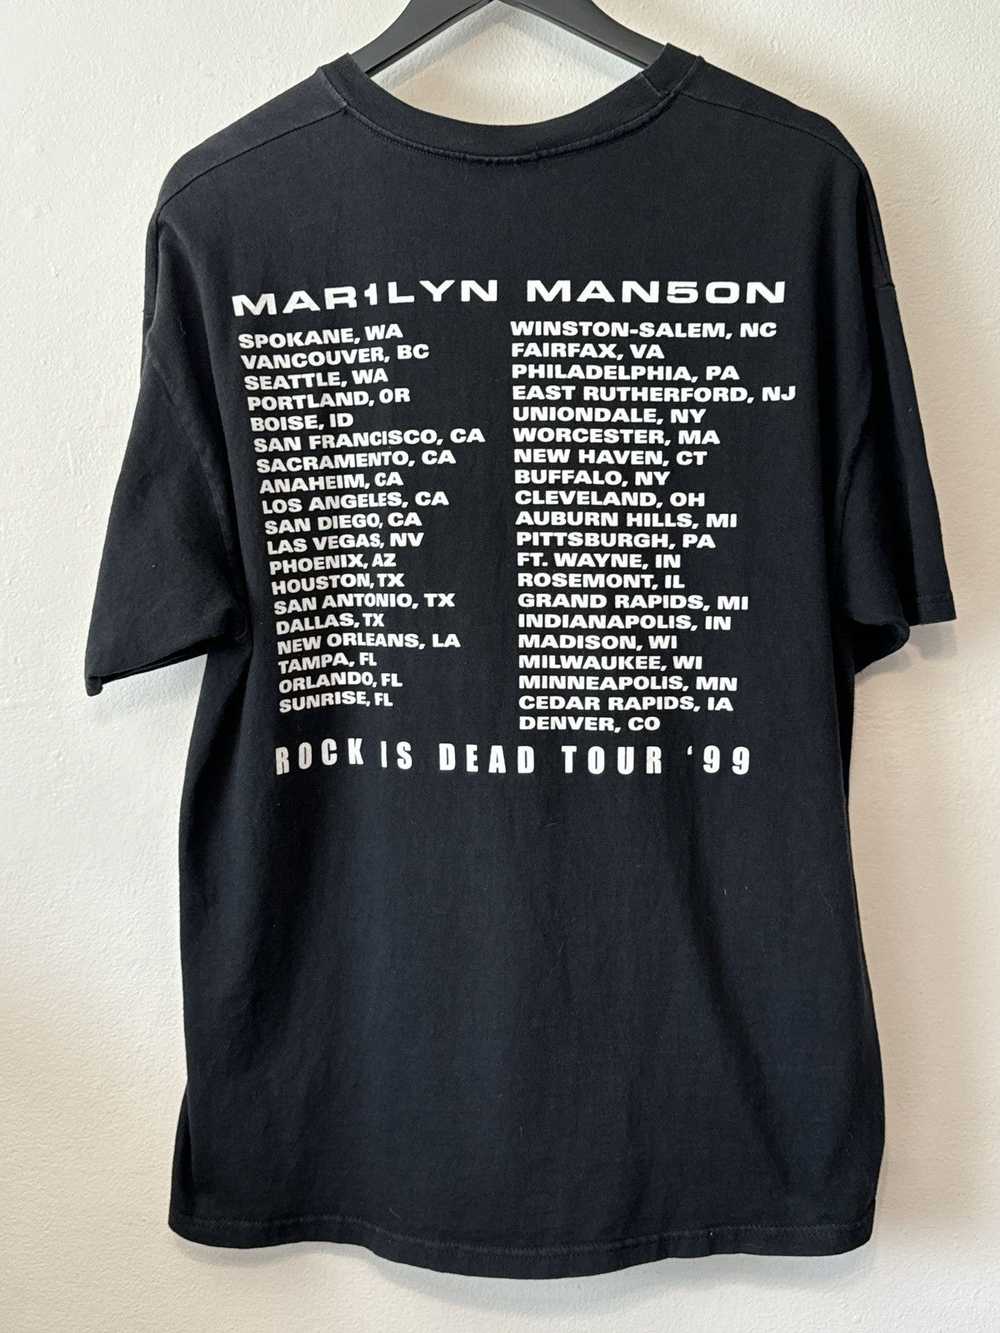 Band Tees × Marilyn Manson × Vintage Vintage Mari… - image 6